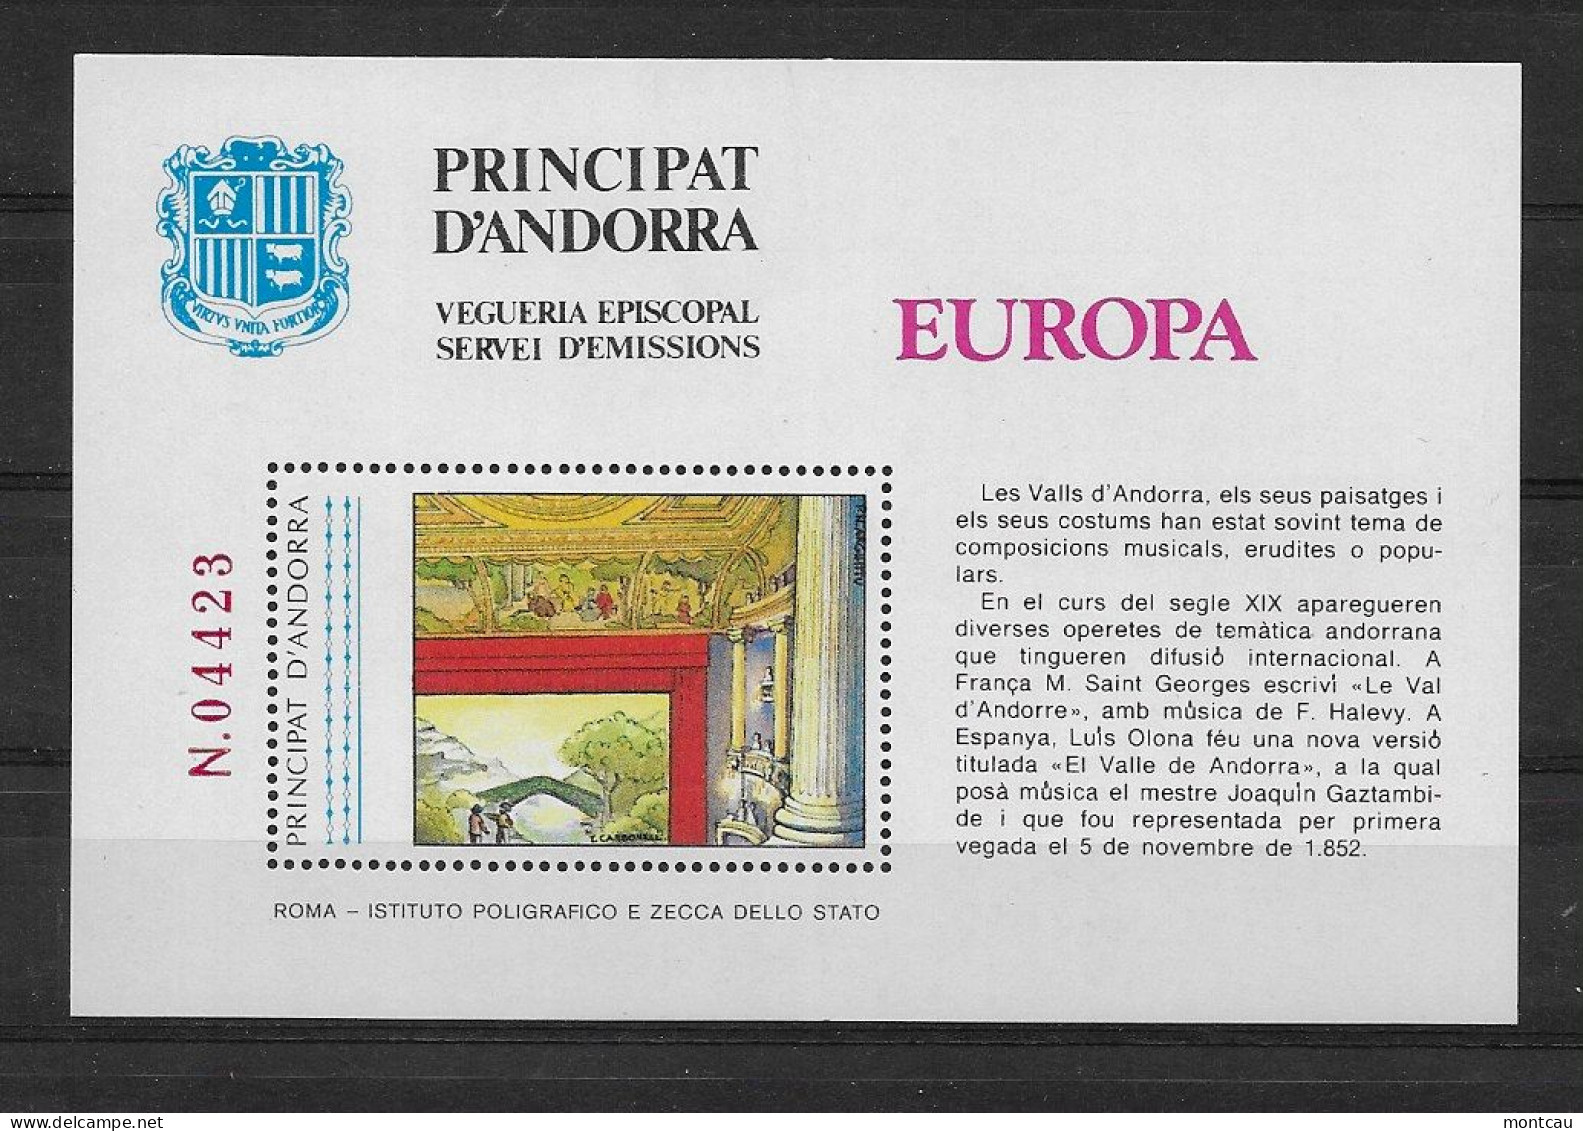 Andorra - 1985 - Vegueria Episcopal Europa - Episcopale Vignetten